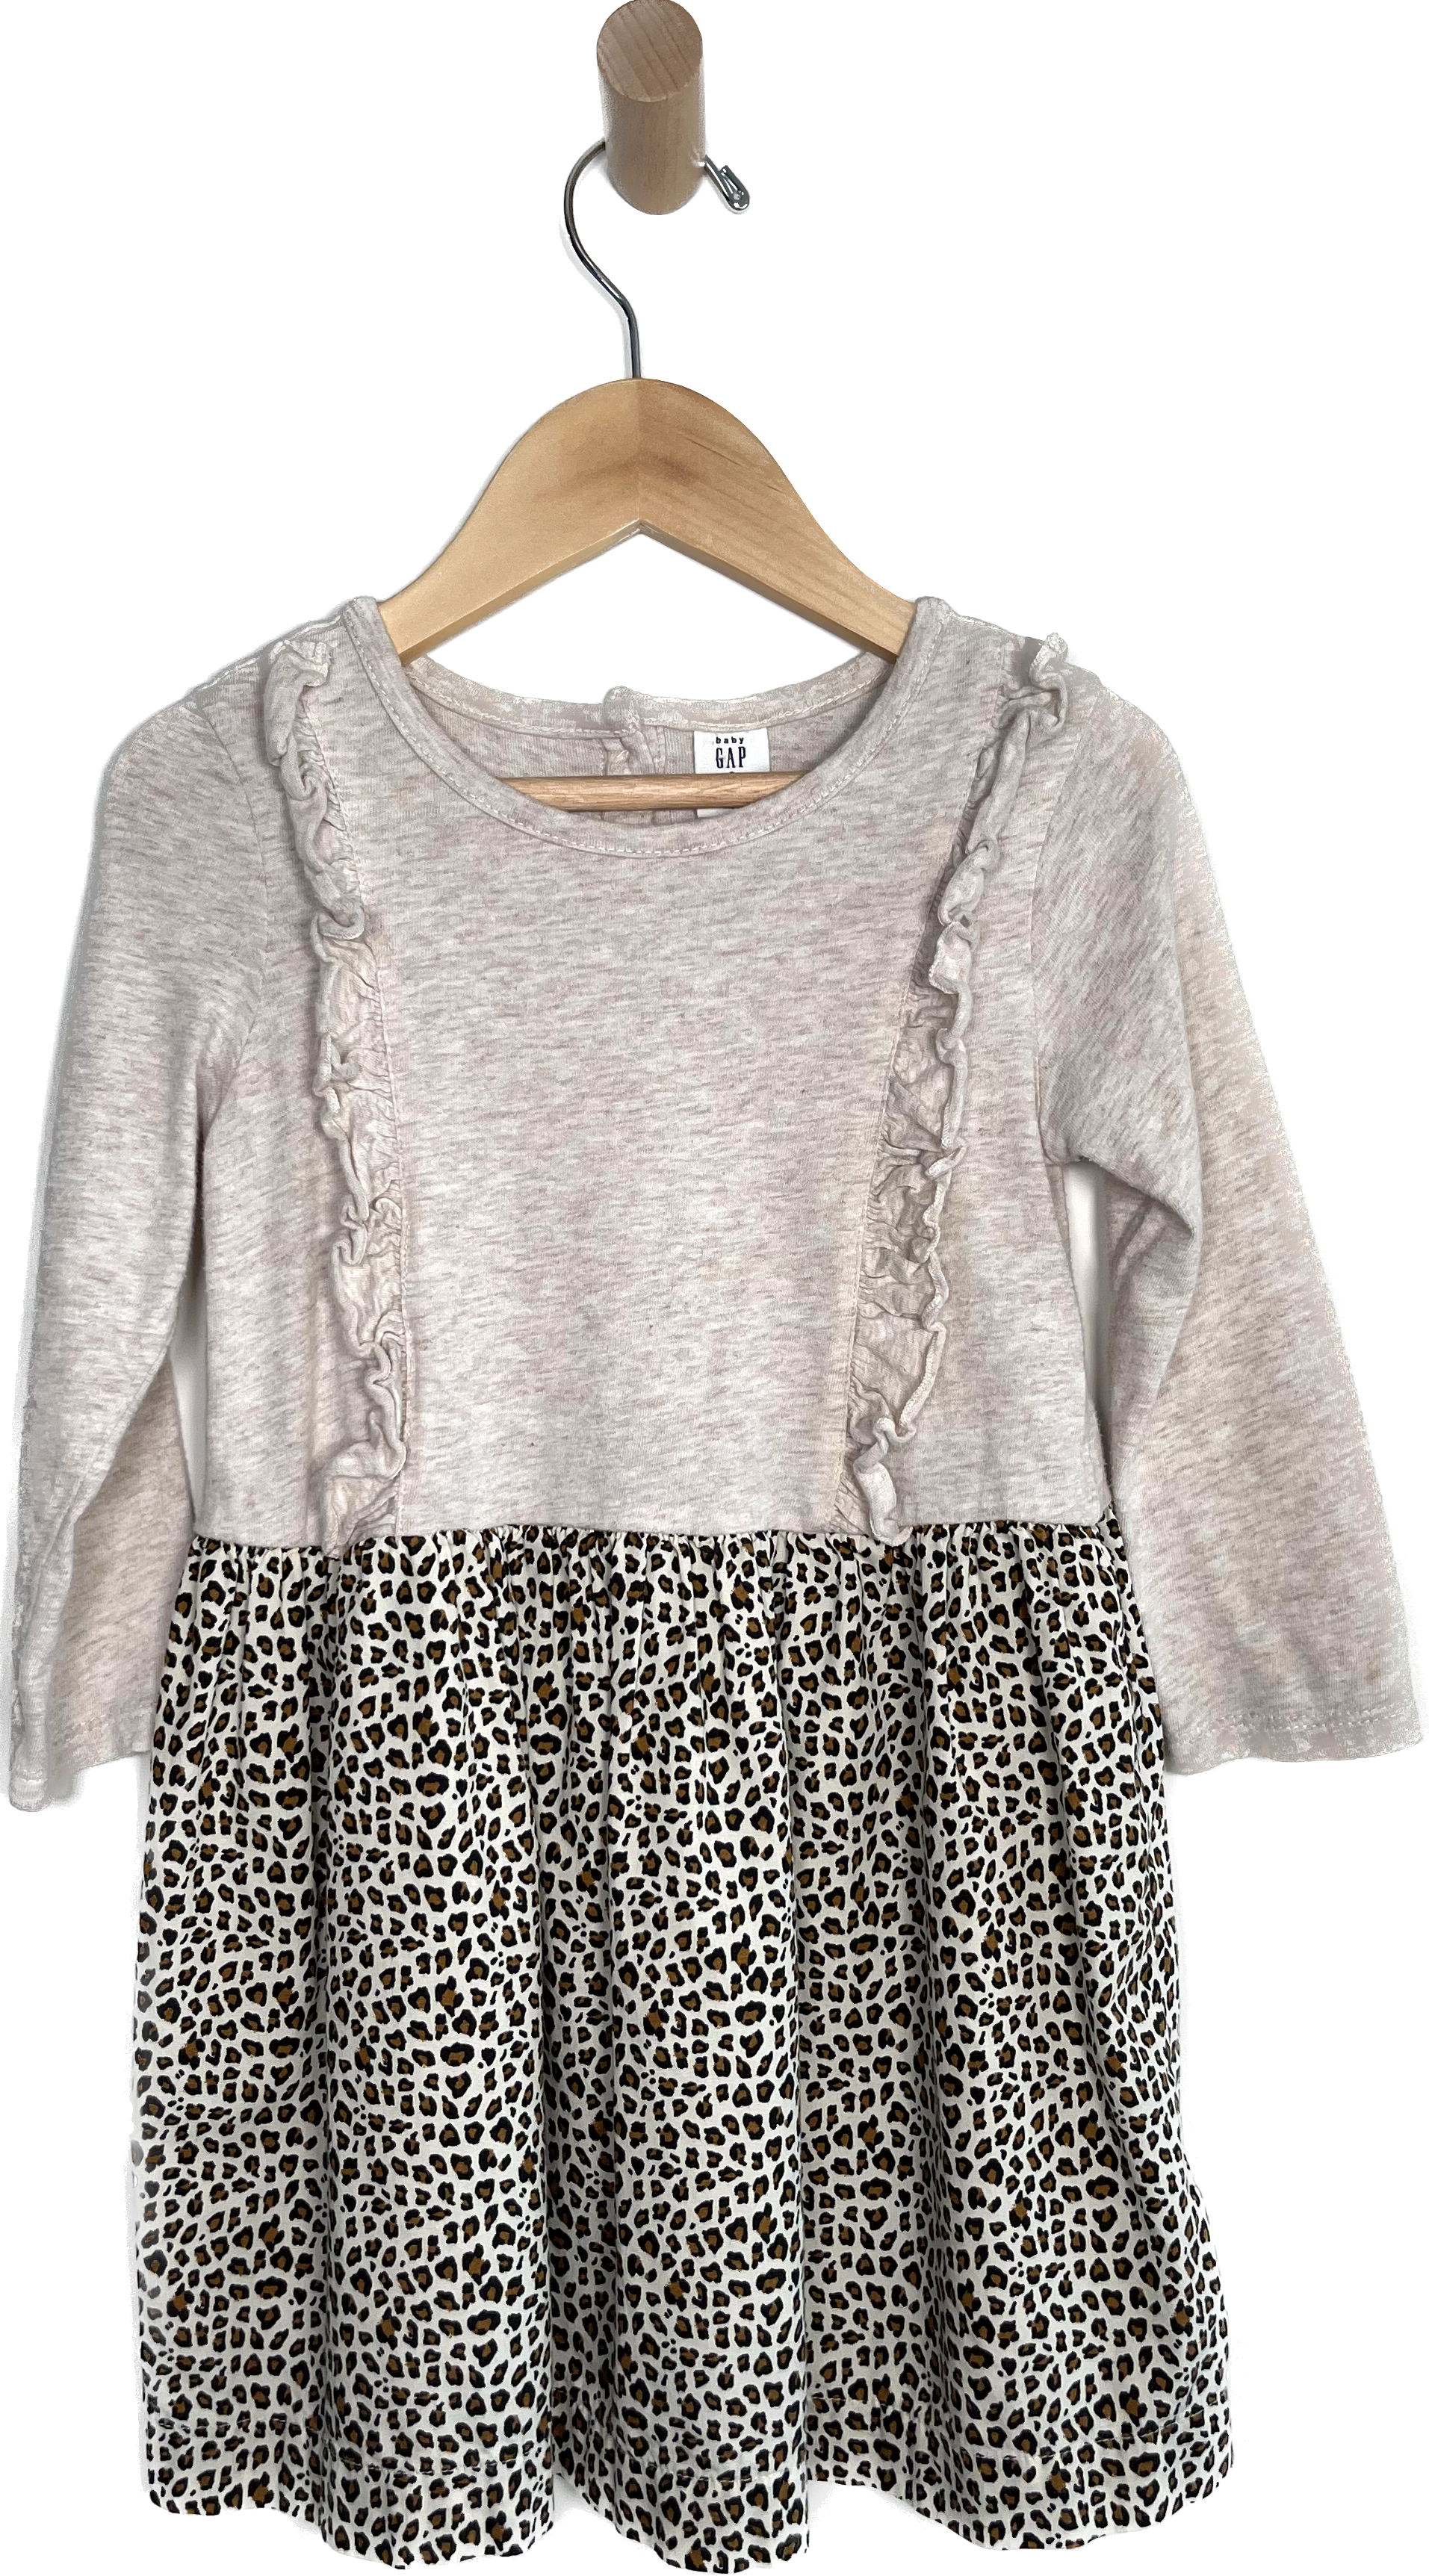 baby gap leopard dress 3T